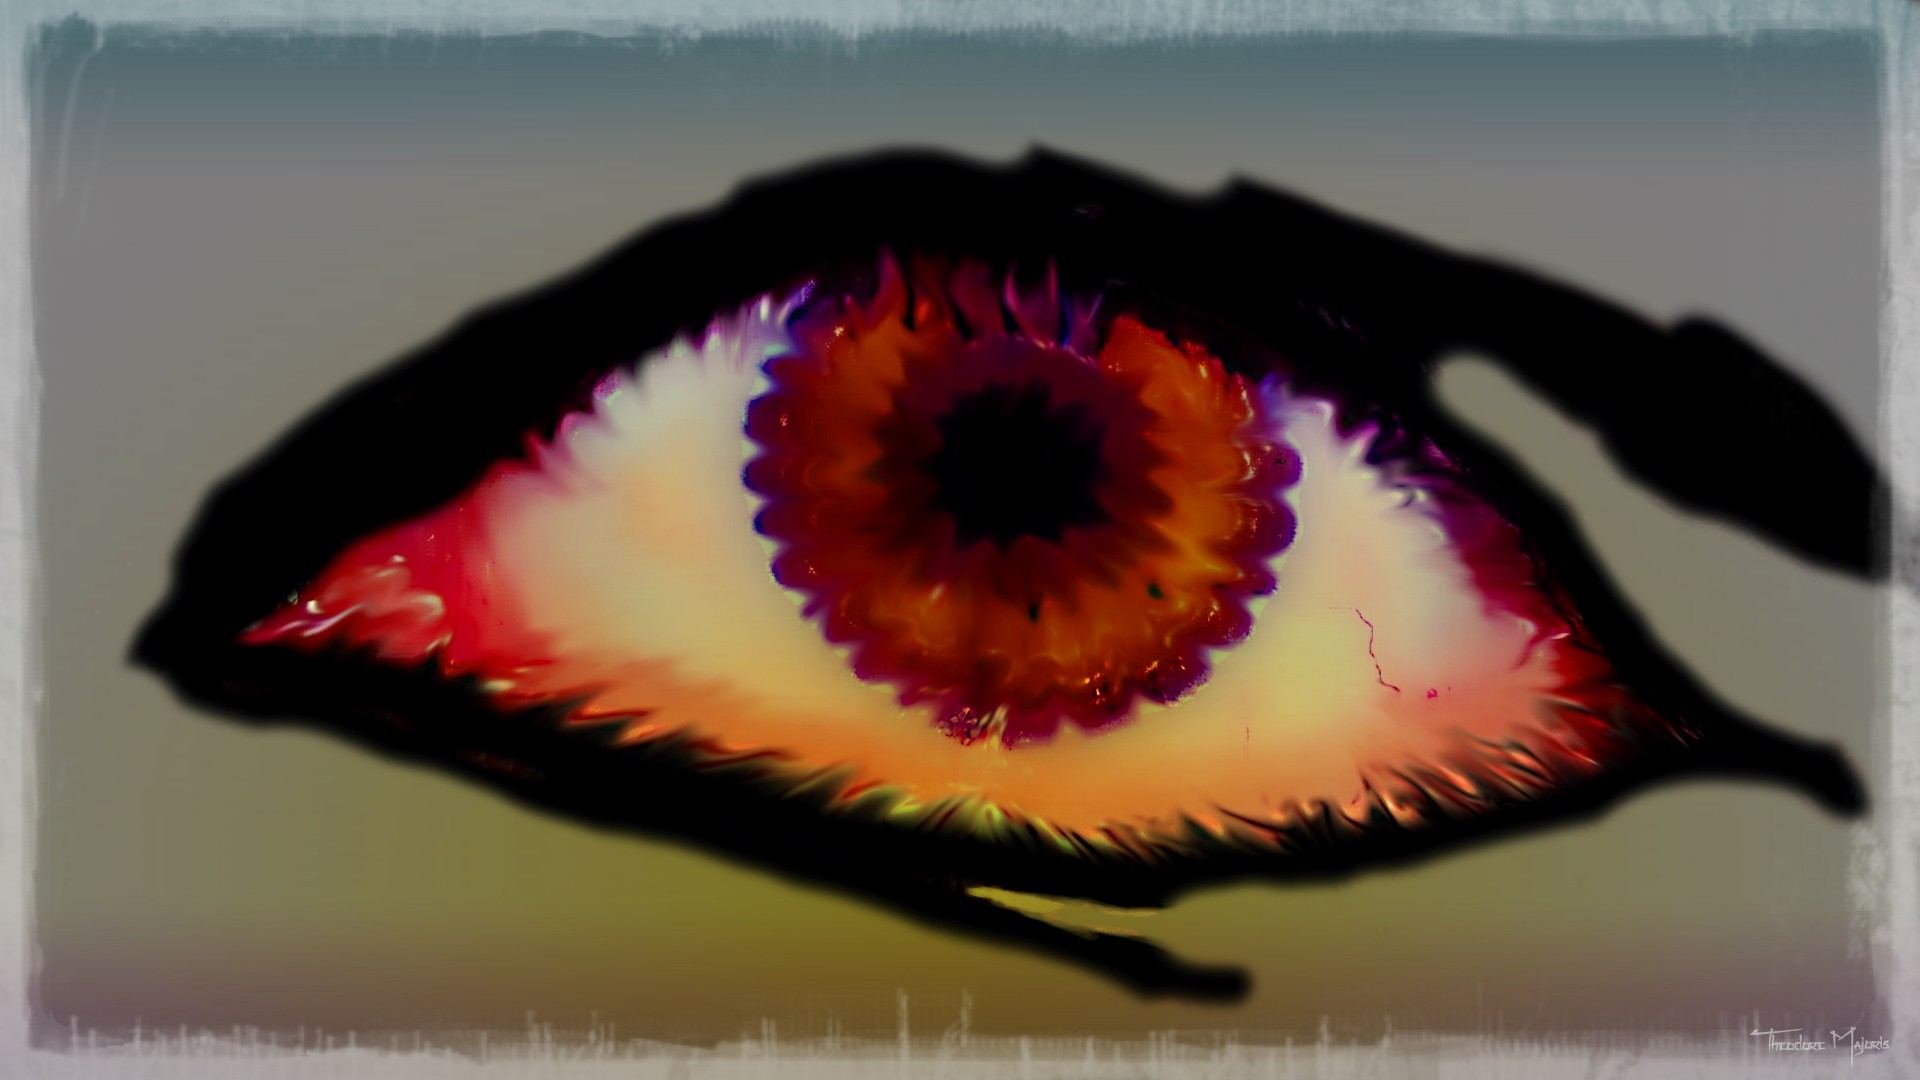 General 1920x1080 painting eyes artwork